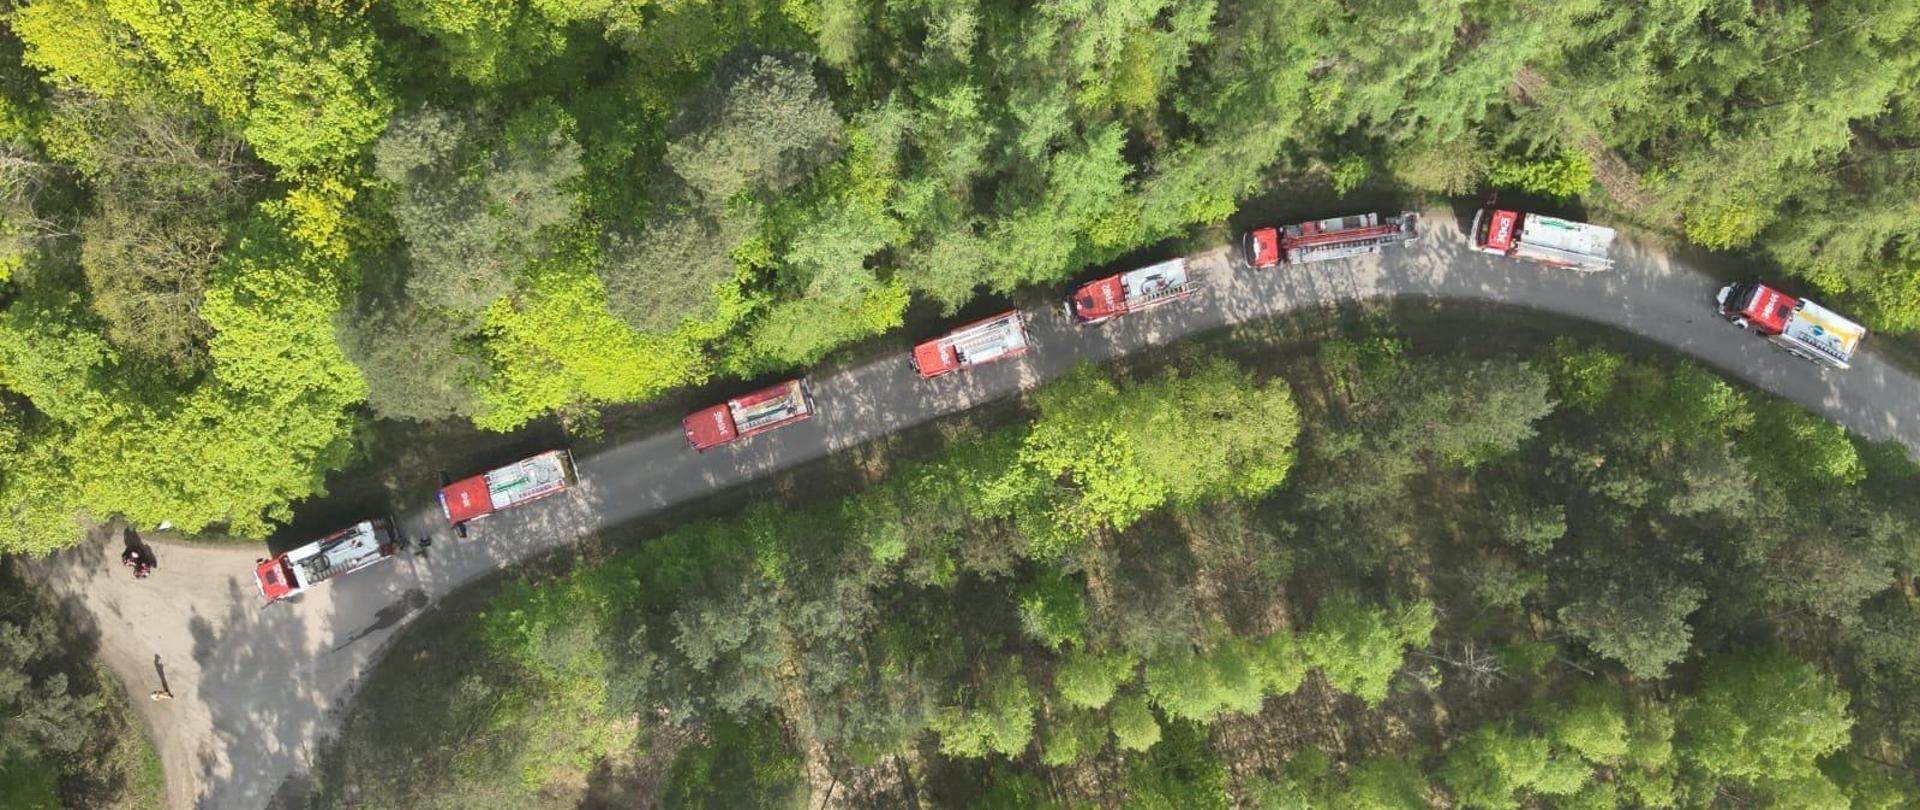 Zdjęcie wykonane z drona. Widok na przybyłe do punktu przyjęcia sił i środków samochody ratowniczo-gaśnicze na tle lasu.